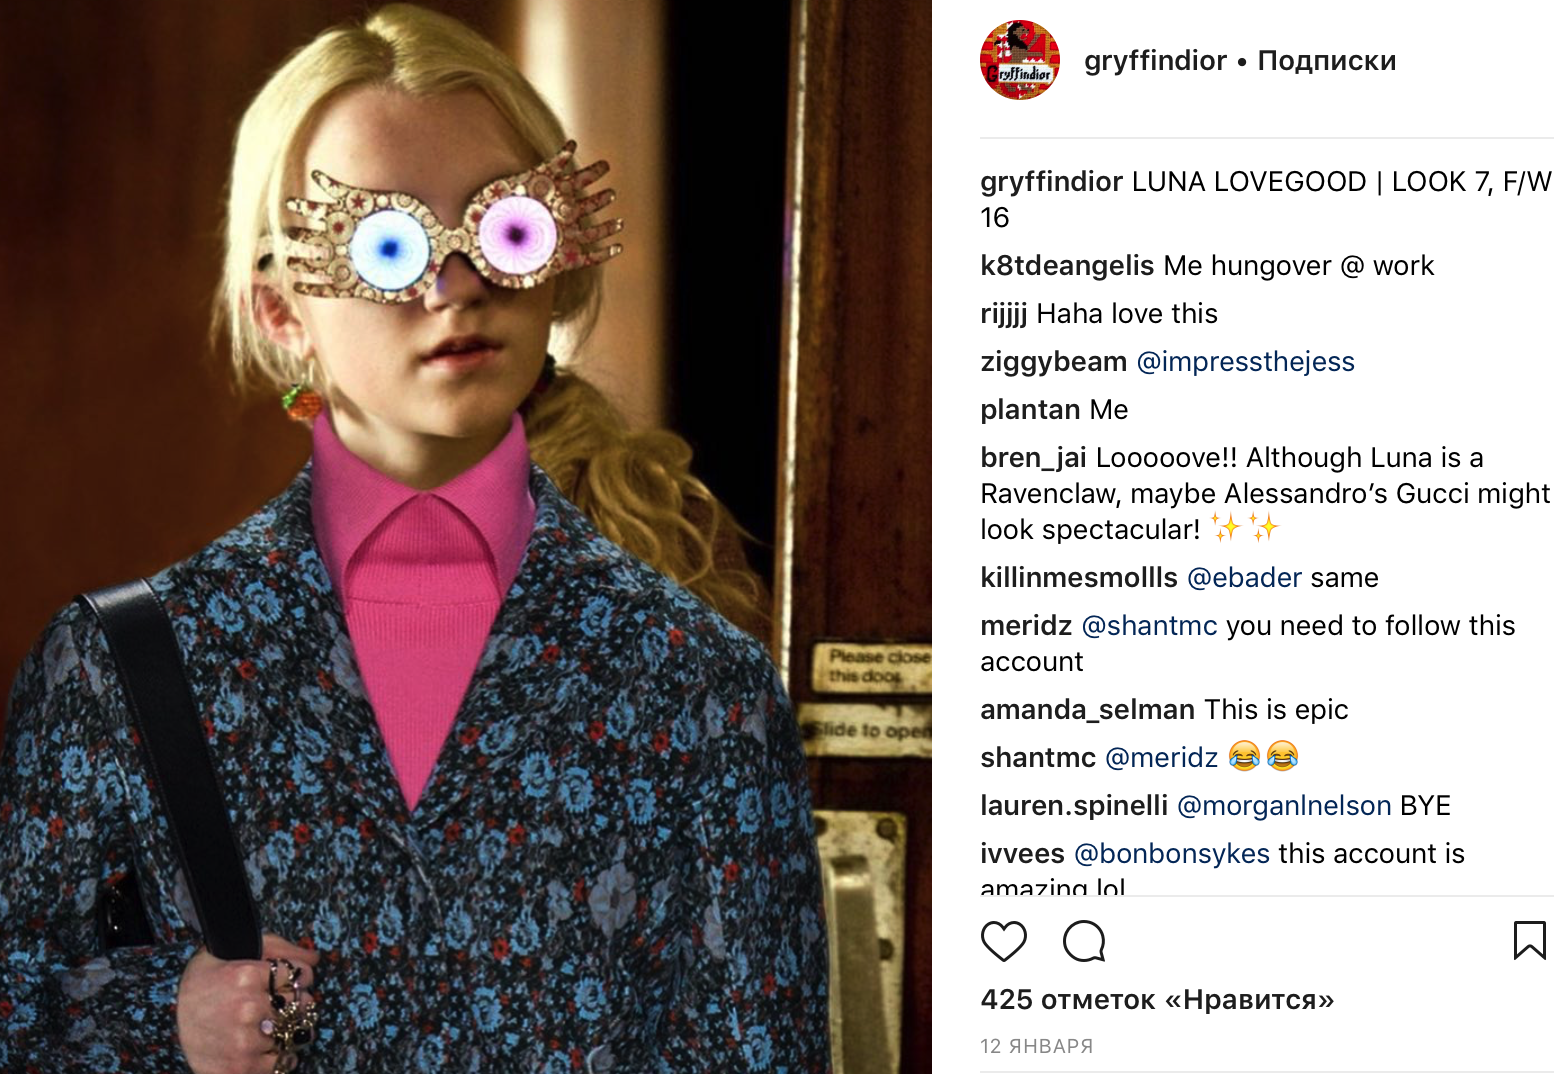 Гриффиндор выбирает Dior! А Гарри Поттер носит жилет из коллекции SS'2017